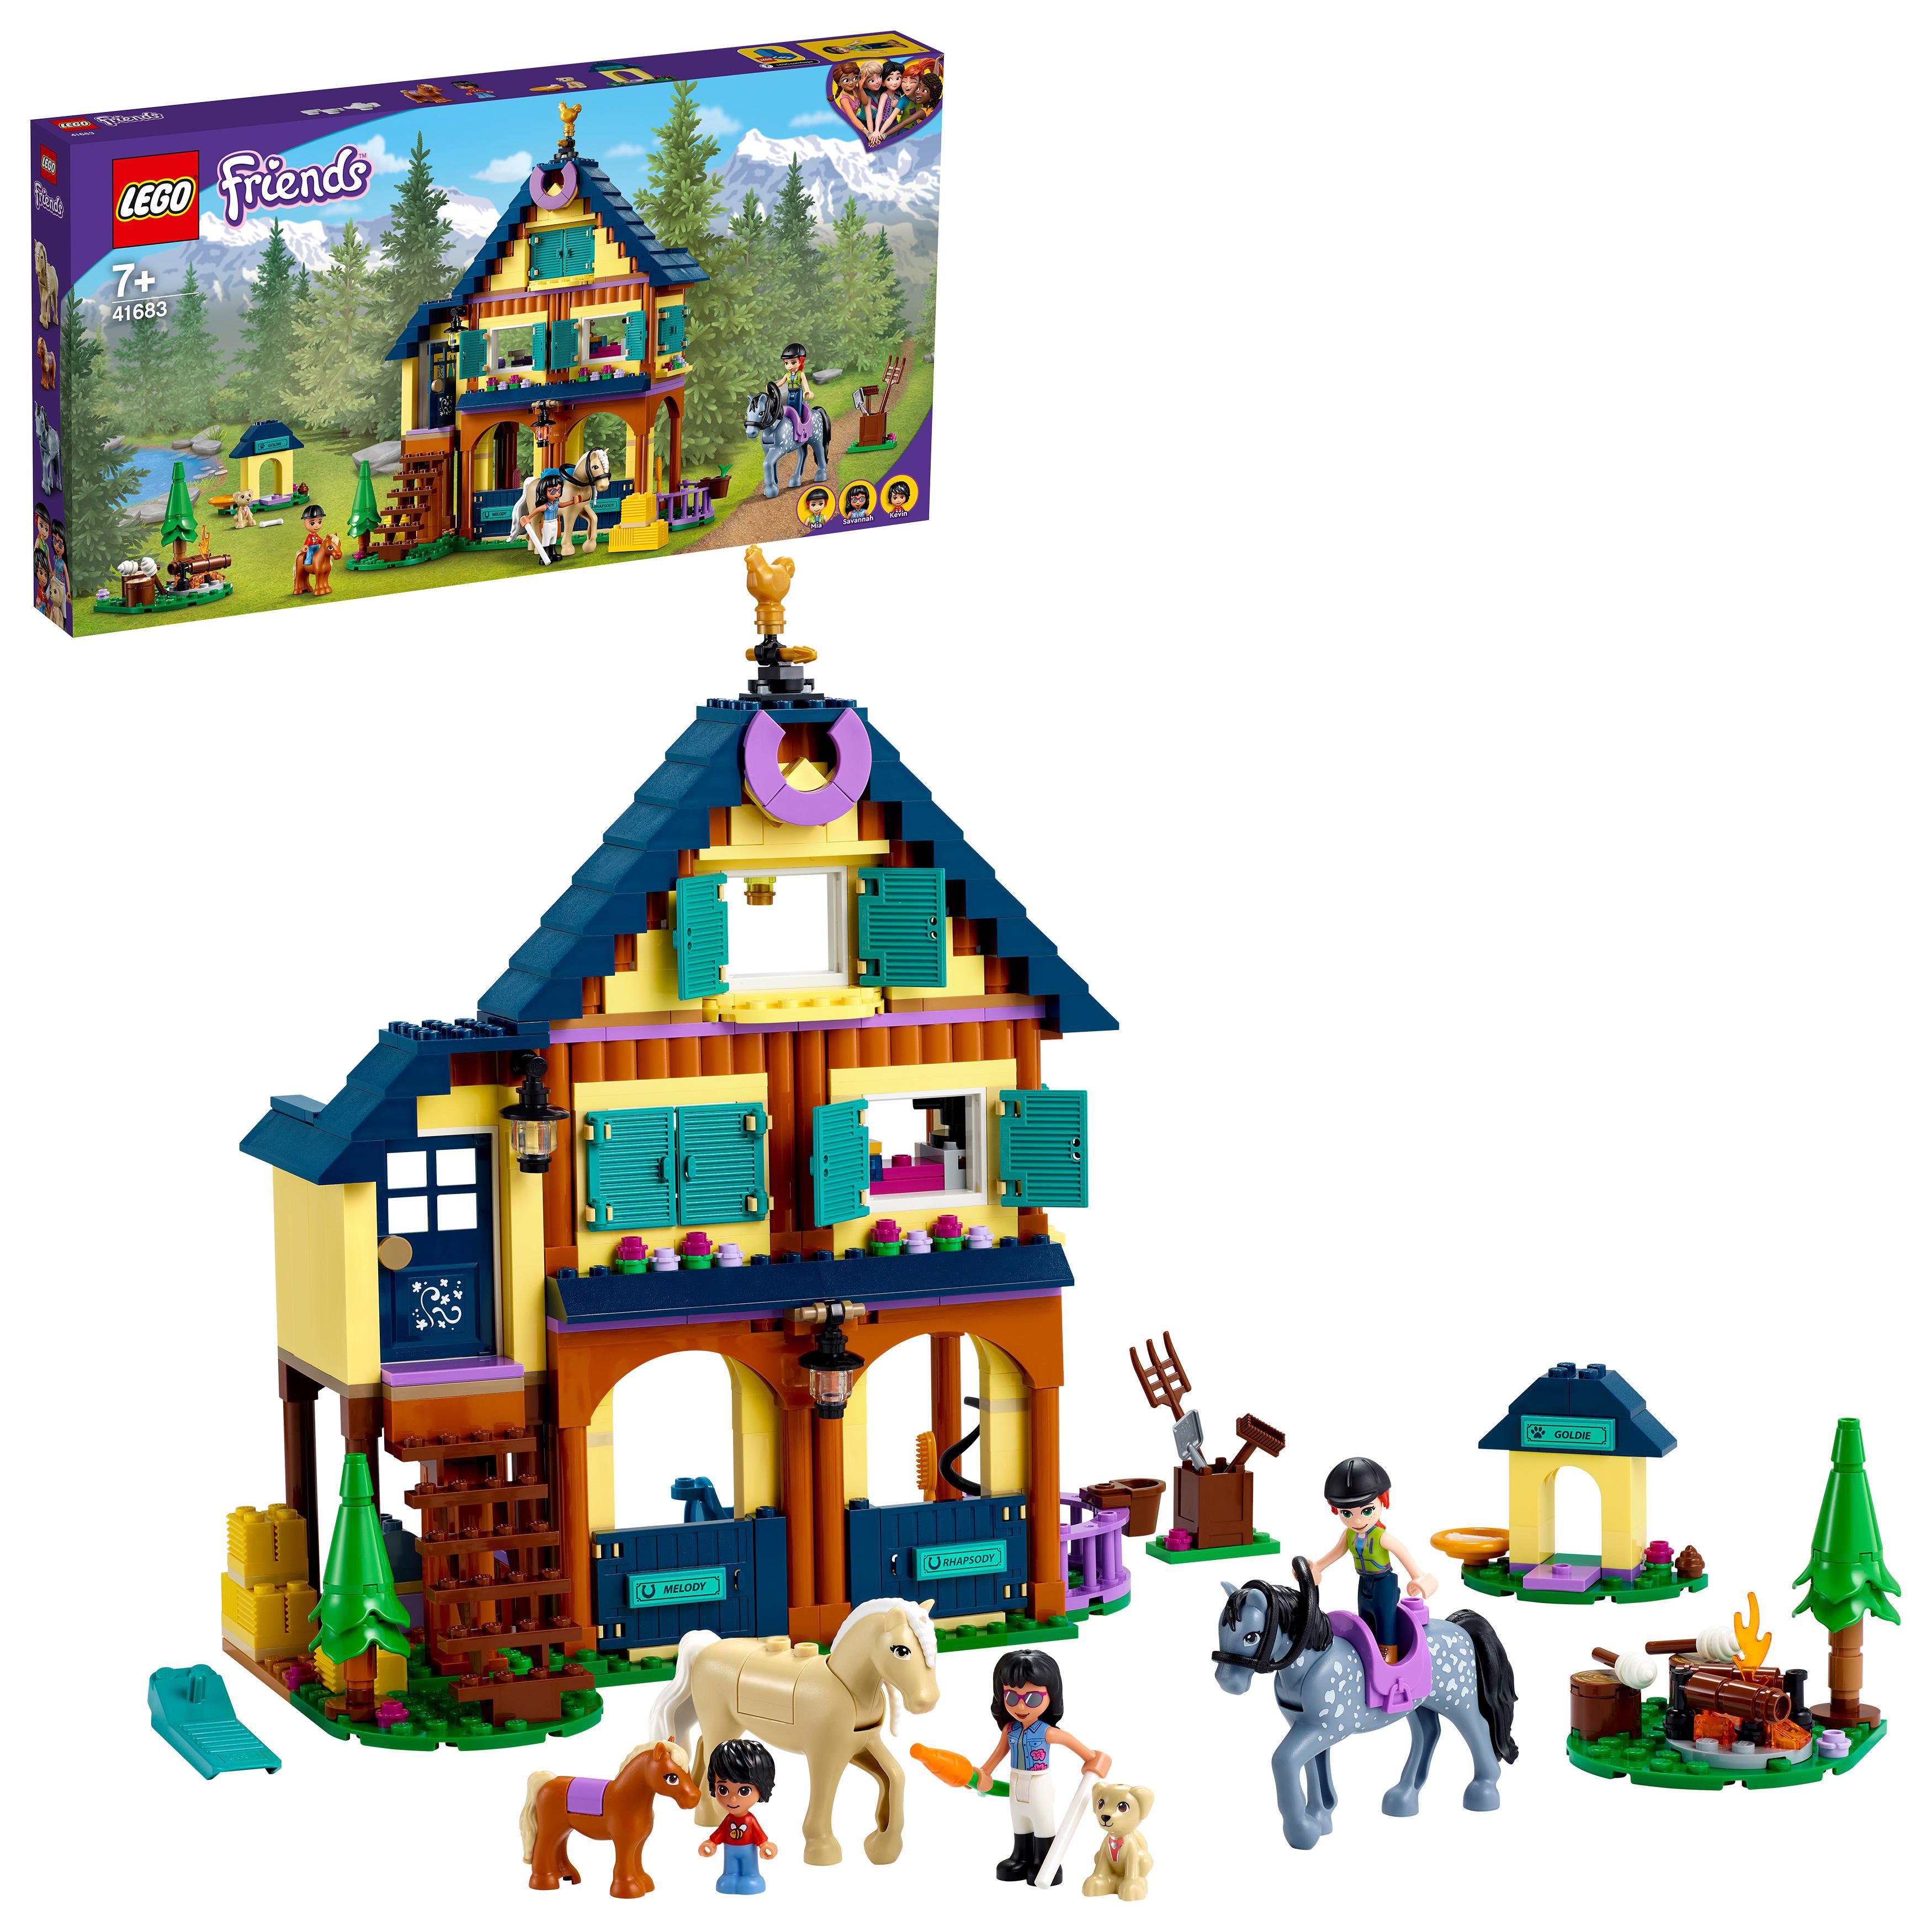 Draad Maak een naam rem Koop LEGO Friends - Paardrijbasis in het bos (41683)